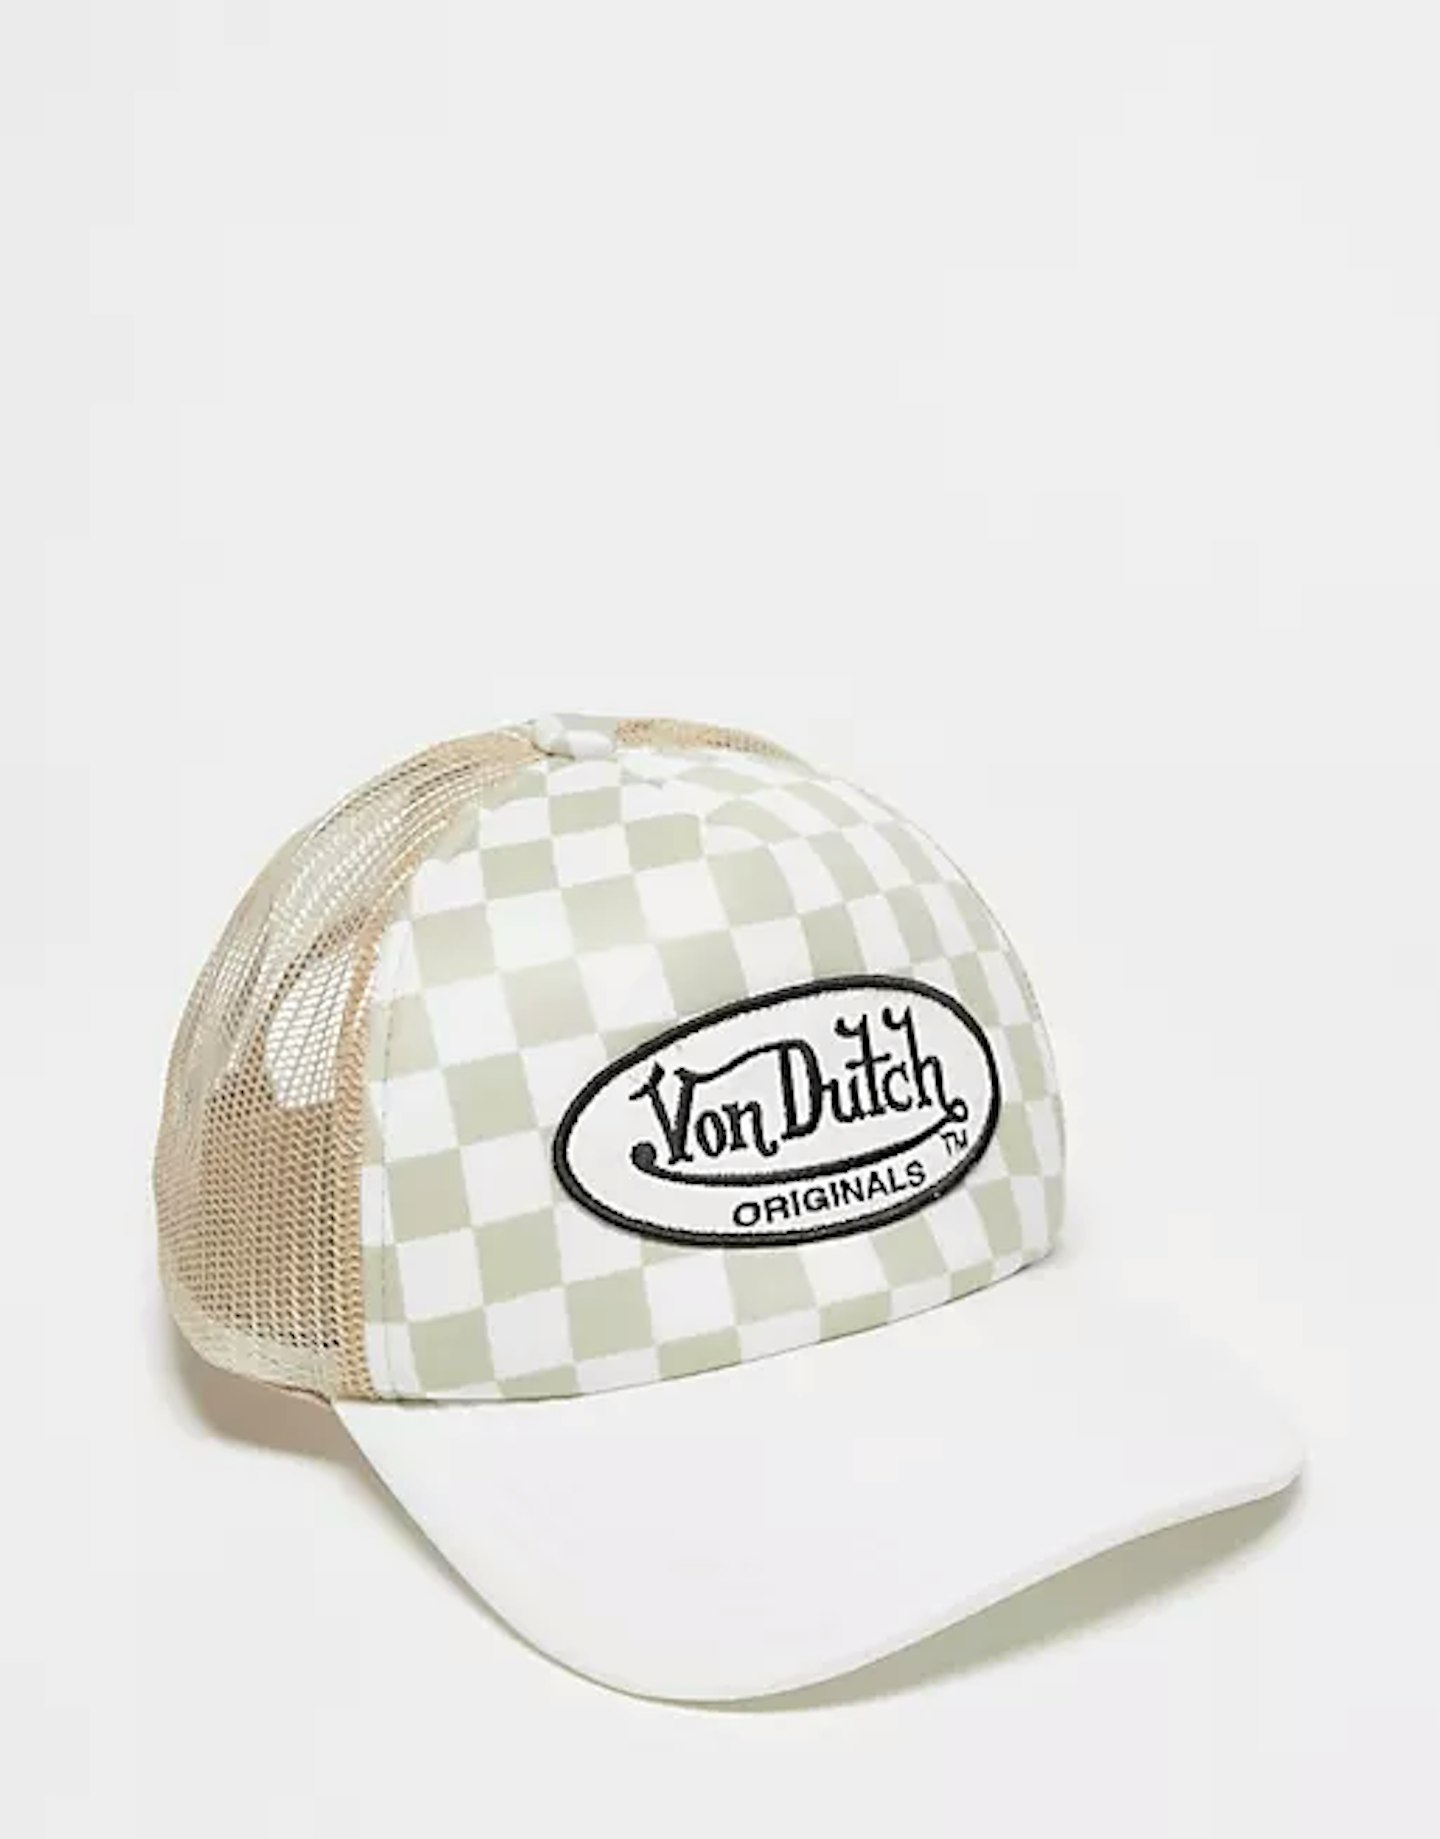 Von Dutch tampa trucker cap beige checkerboard print